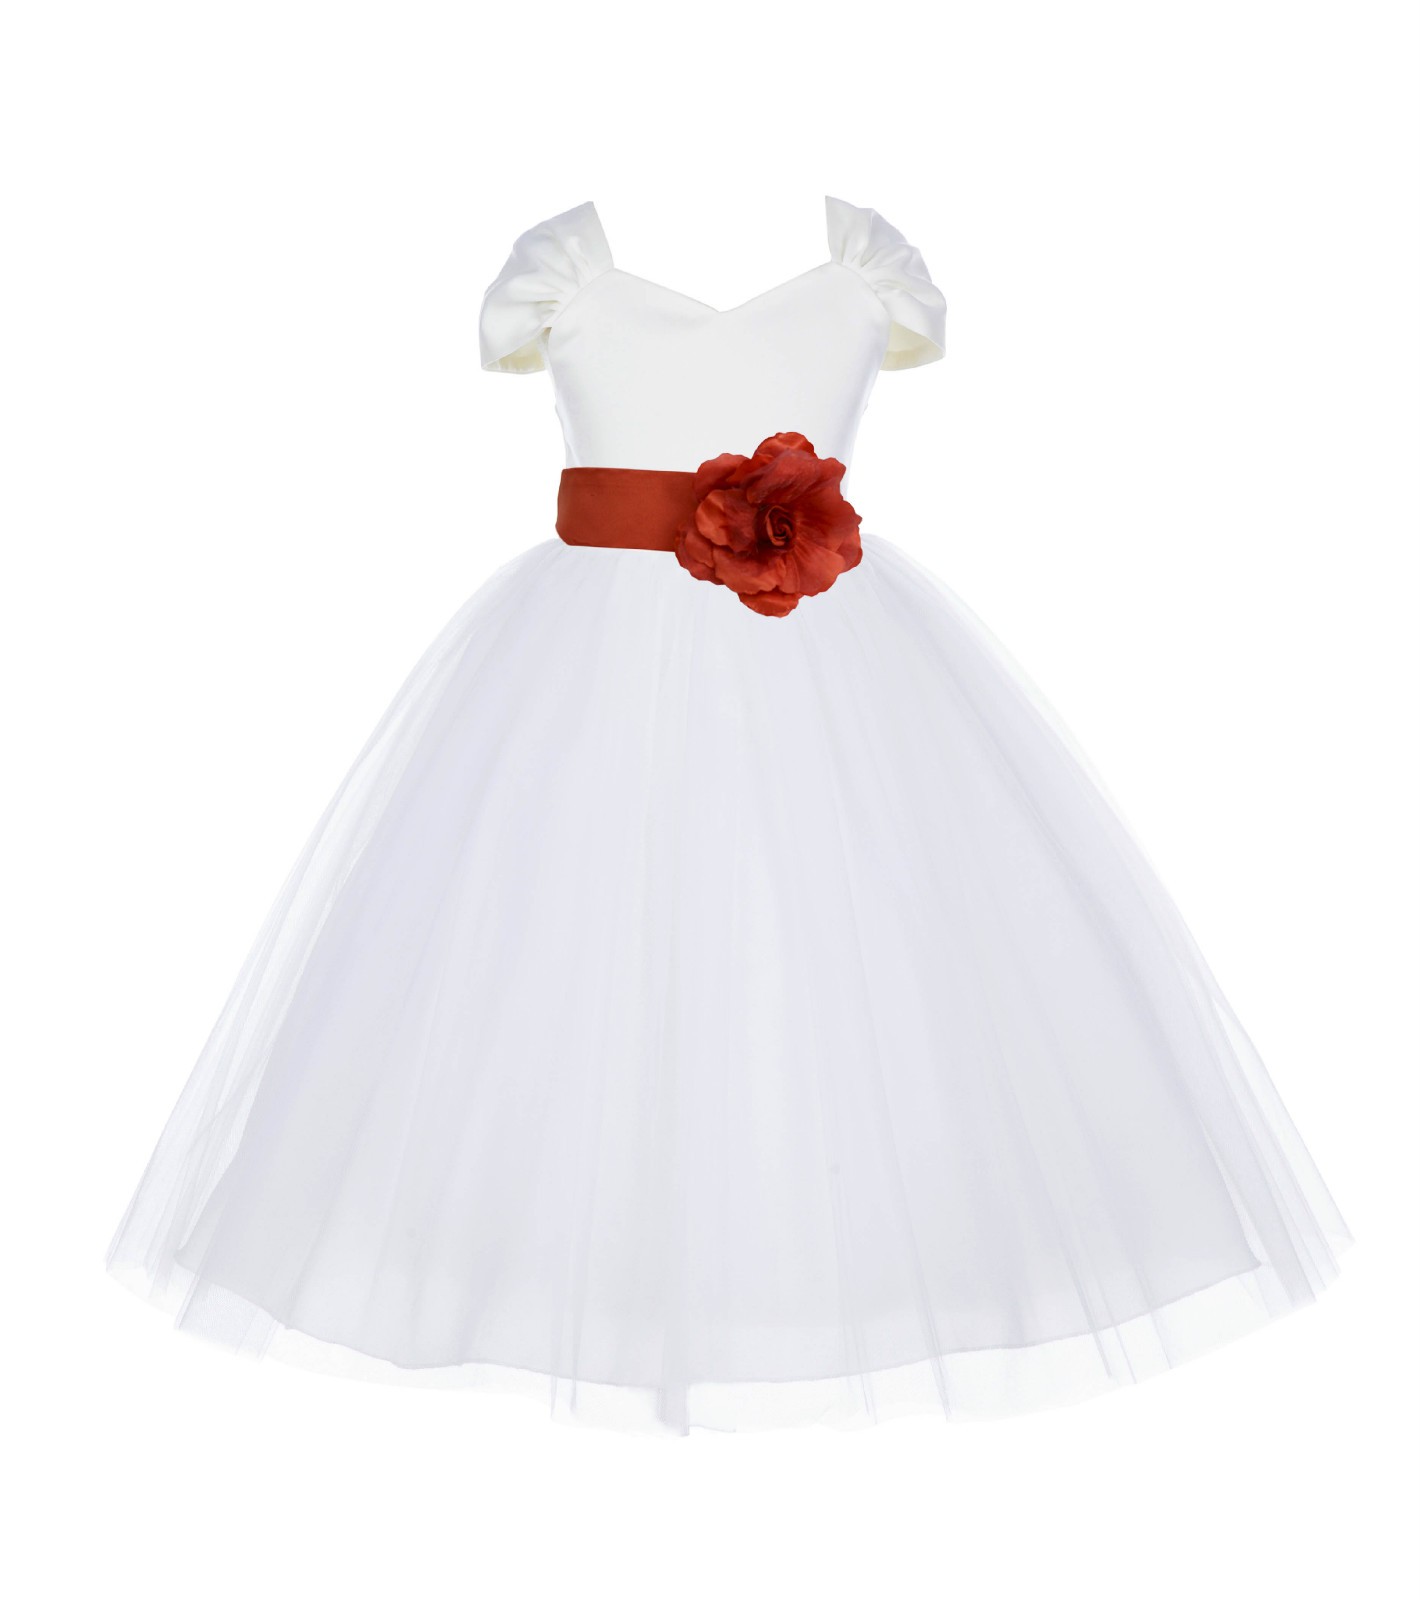 Ivory/Persimmon V-shaped Neckline Short Sleeves Tulle Flower Girl Dress 154S